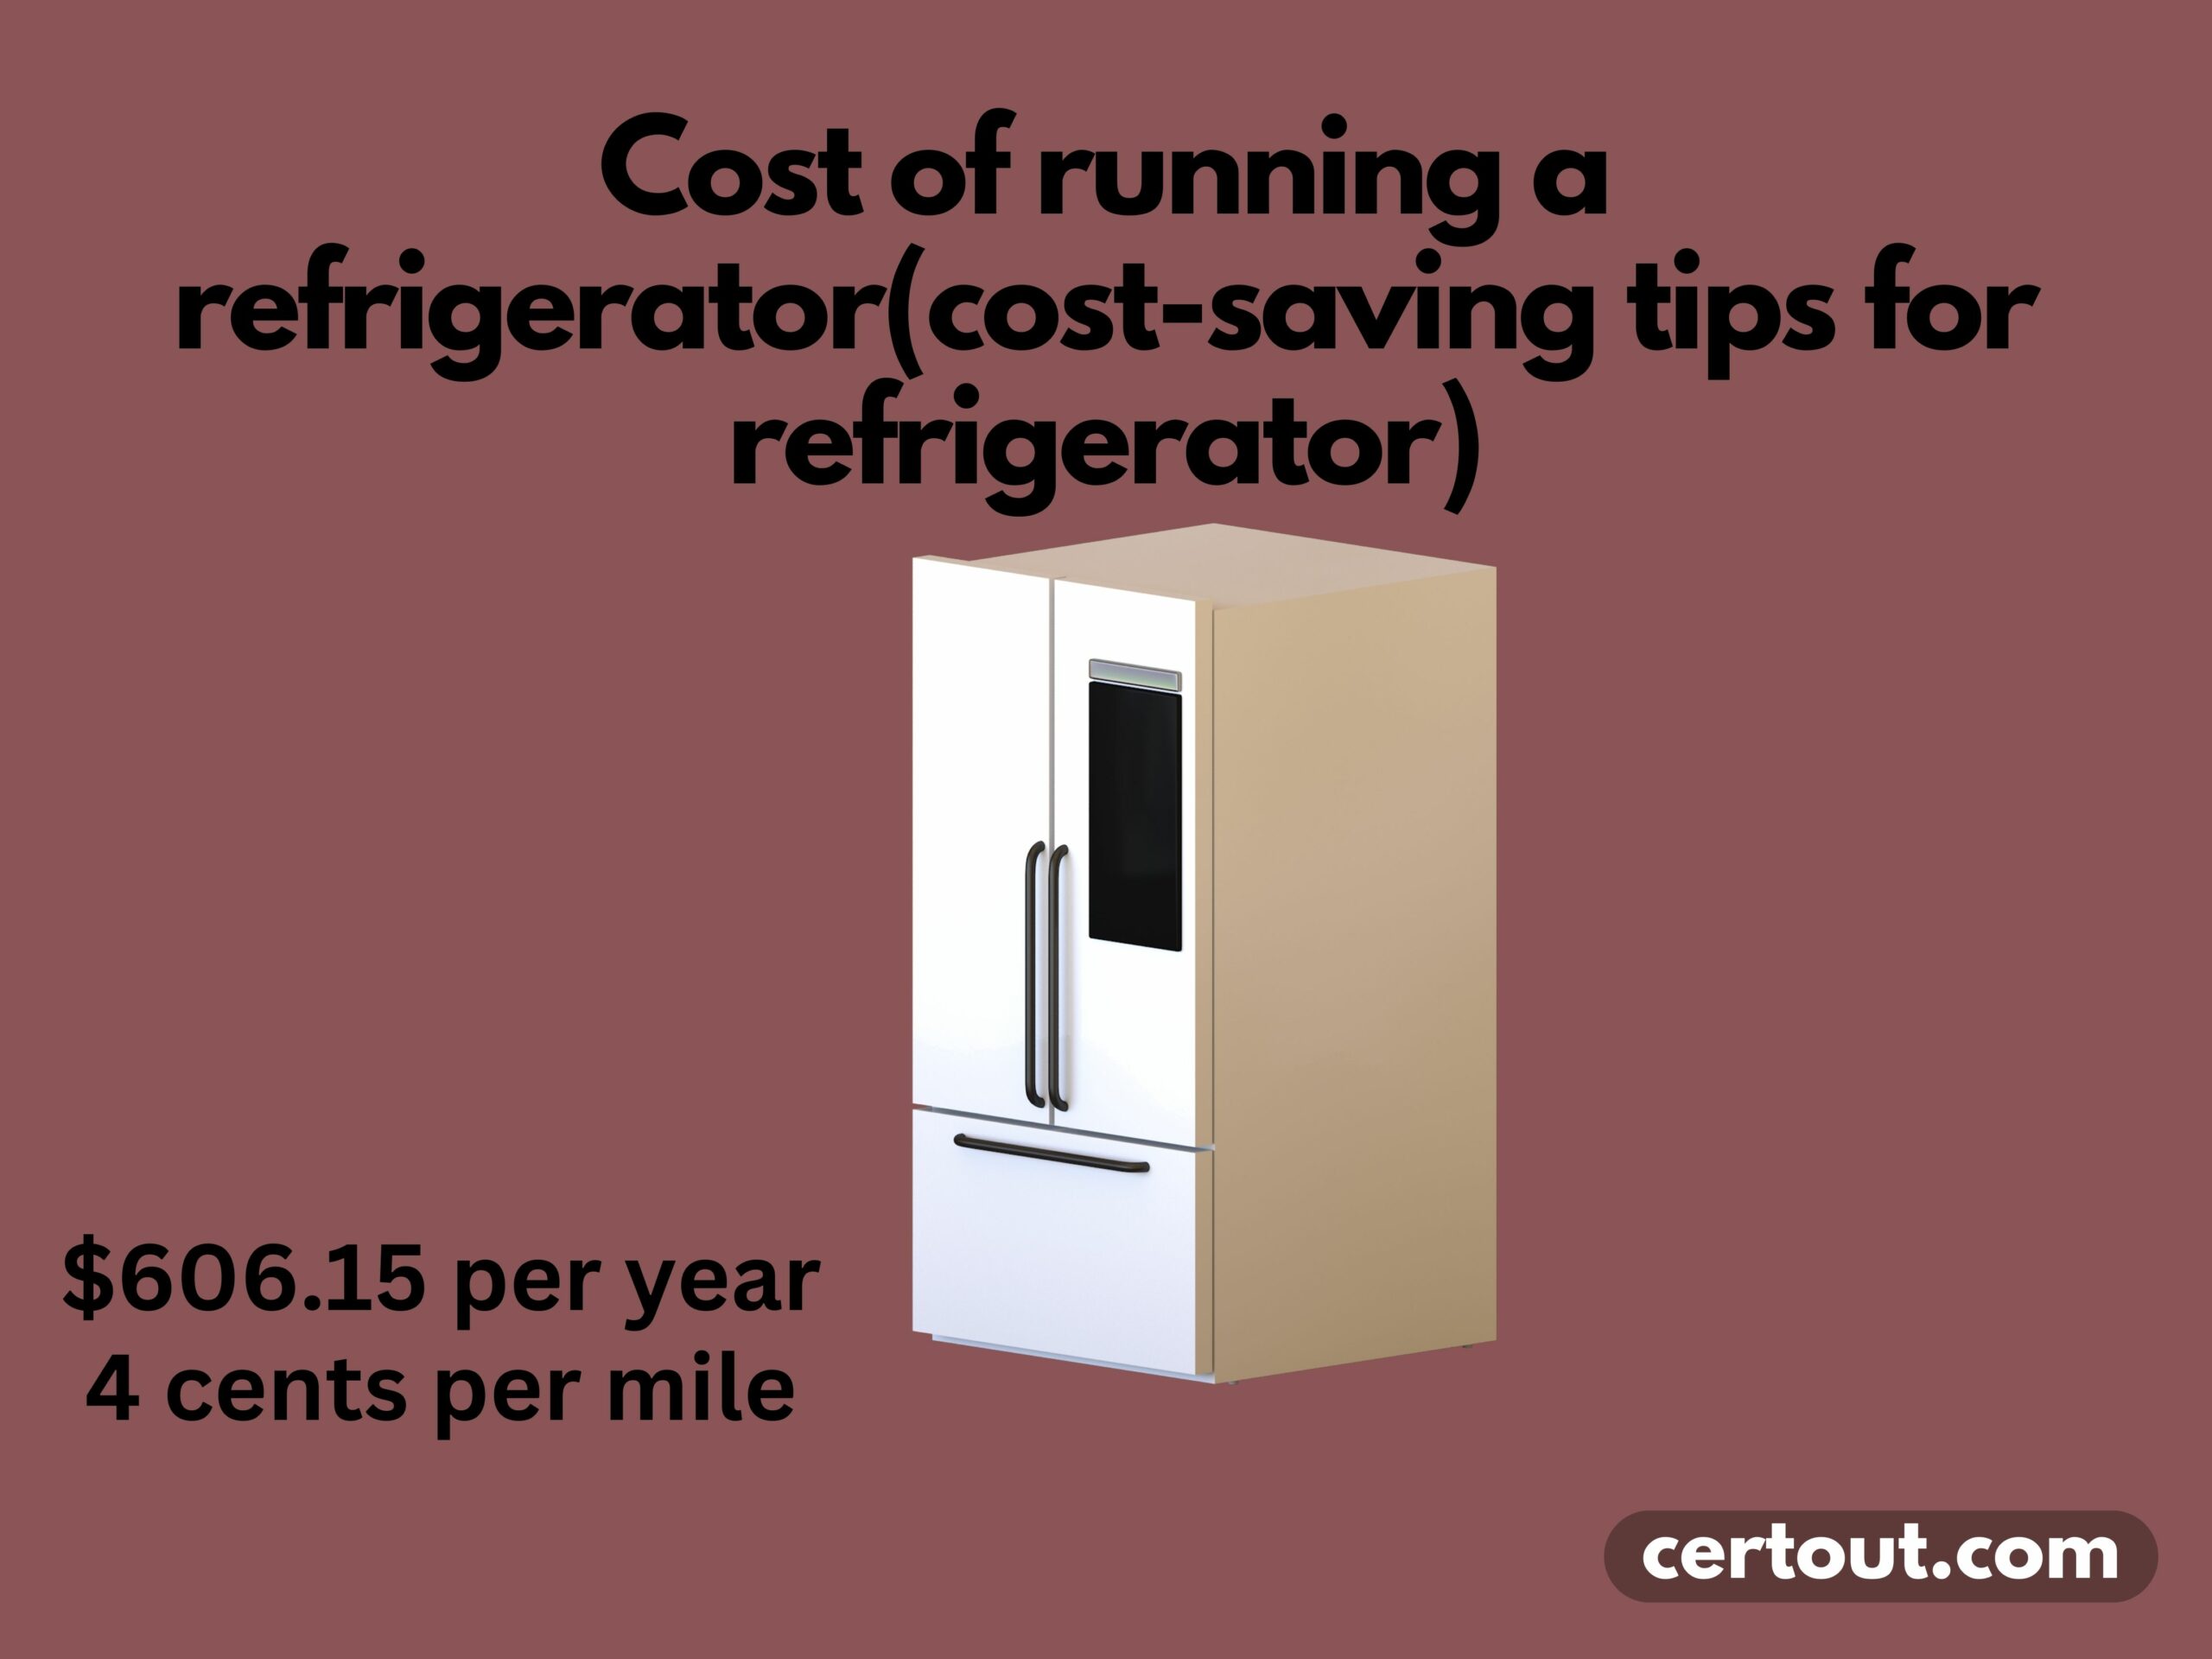 Cost of running a refrigerator